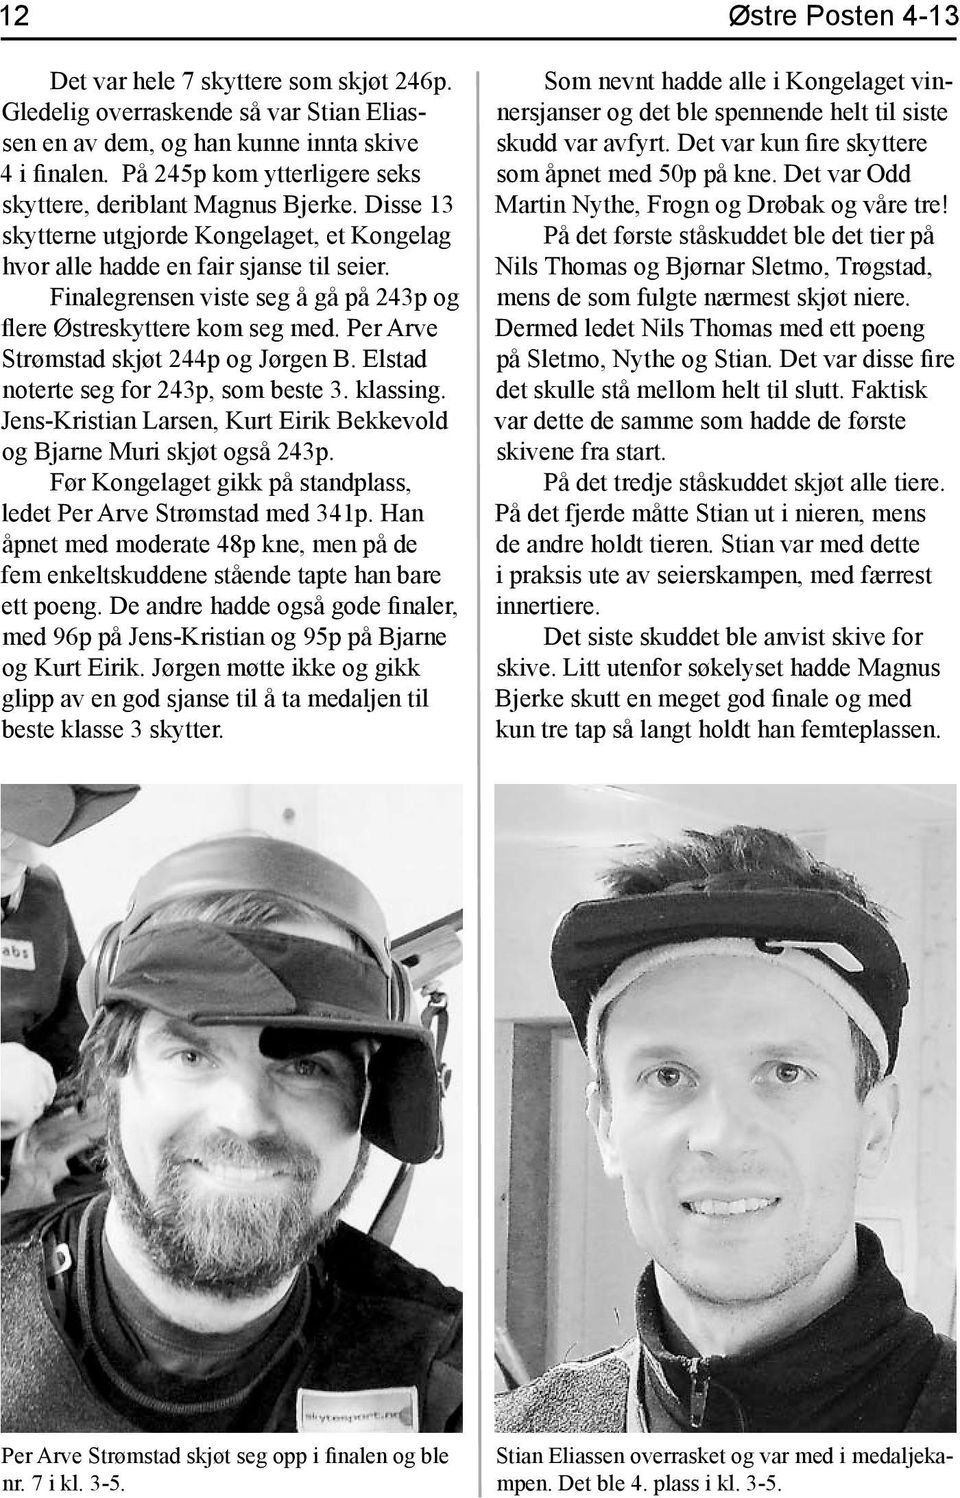 Per Arve Strømstad skjøt 244p og Jørgen B. Elstad noterte seg for 243p, som beste 3. klassing. Jens-Kristian Larsen, Kurt Eirik Bekkevold og Bjarne Muri skjøt også 243p.